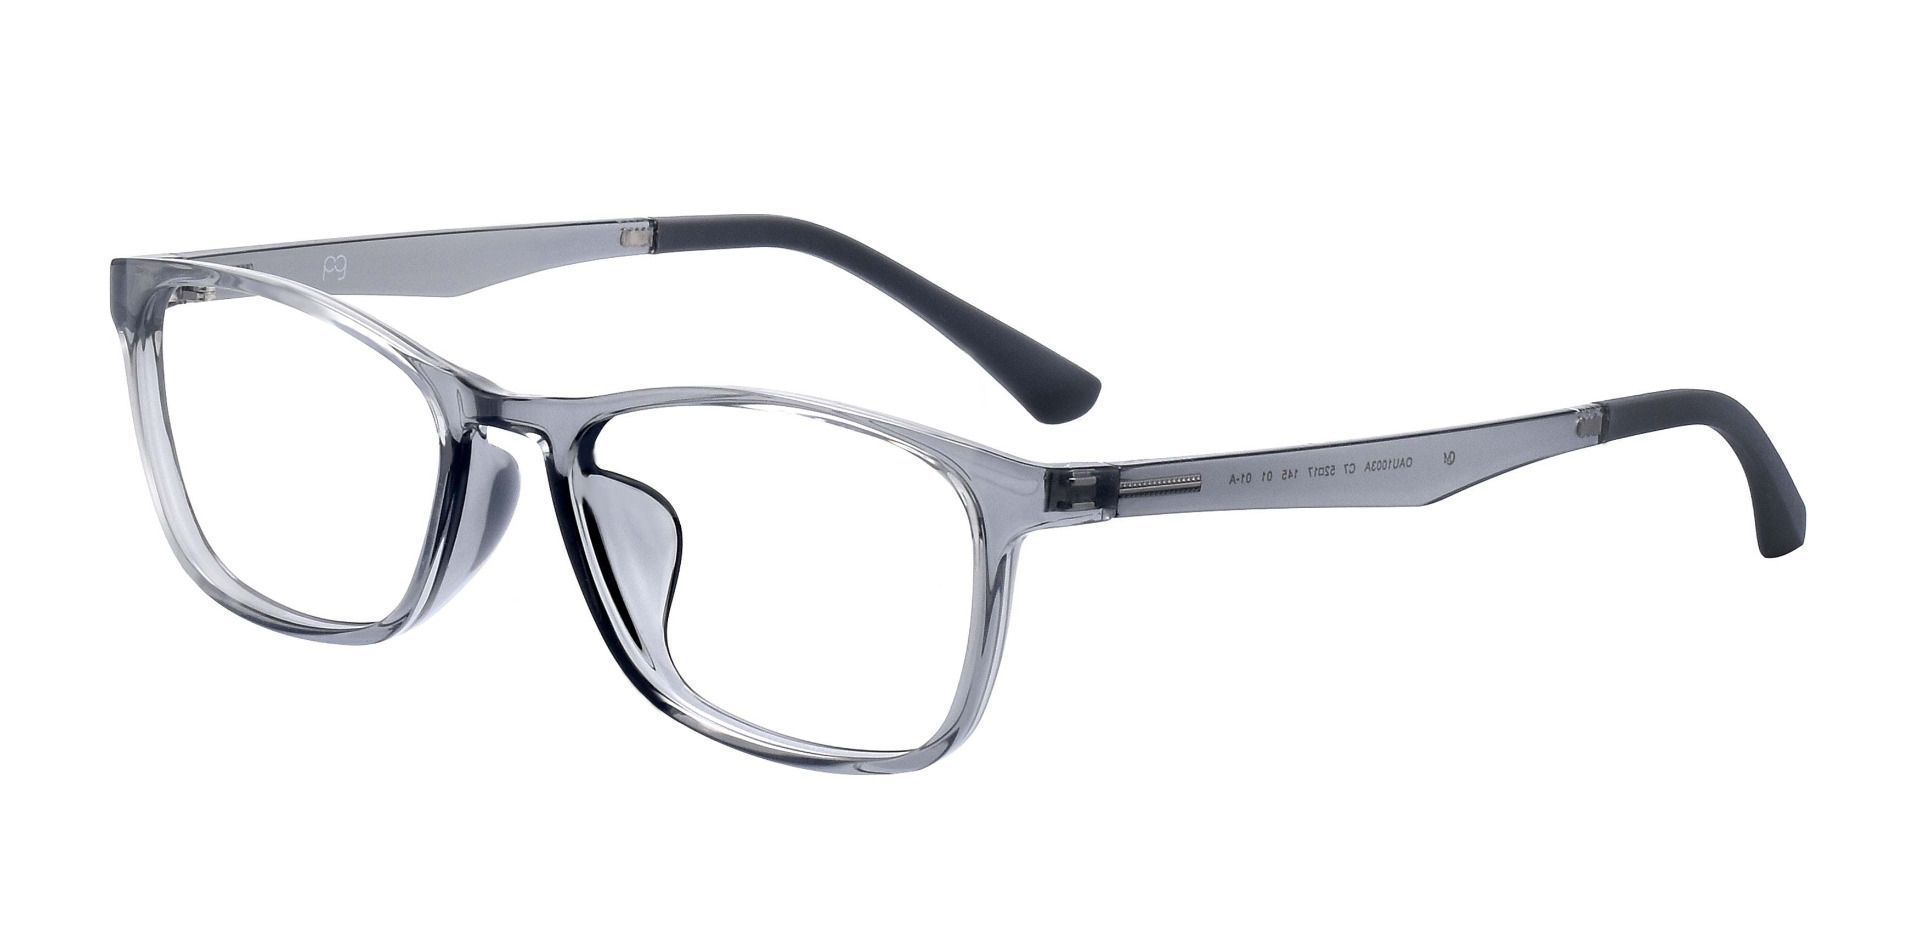 Merritt Rectangle Non-Rx Glasses - Gray